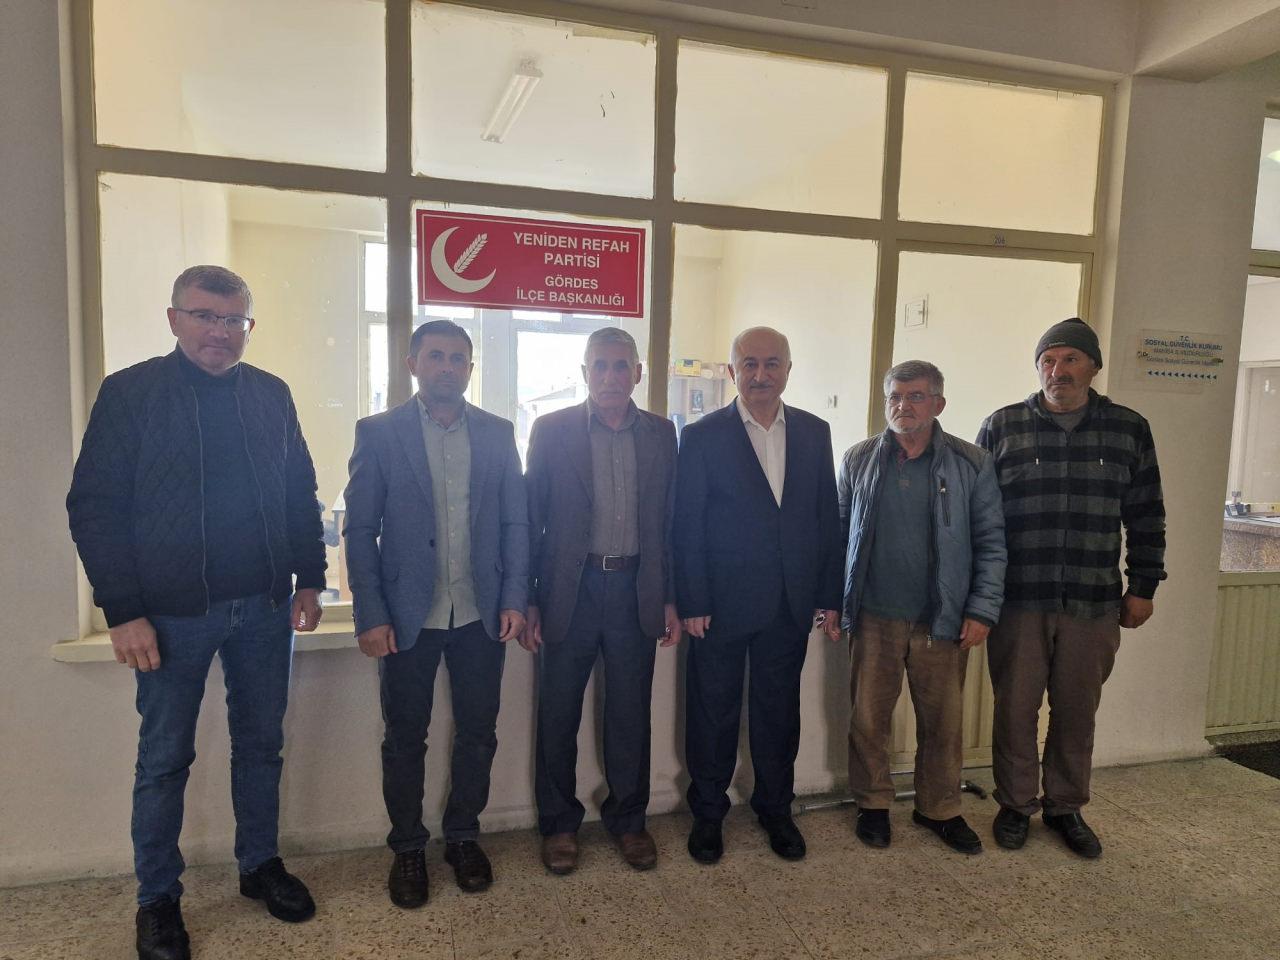 Yeniden Refah Partisi'nde istifa! Başkan ve 5 kişi AK Parti'ye katıldı